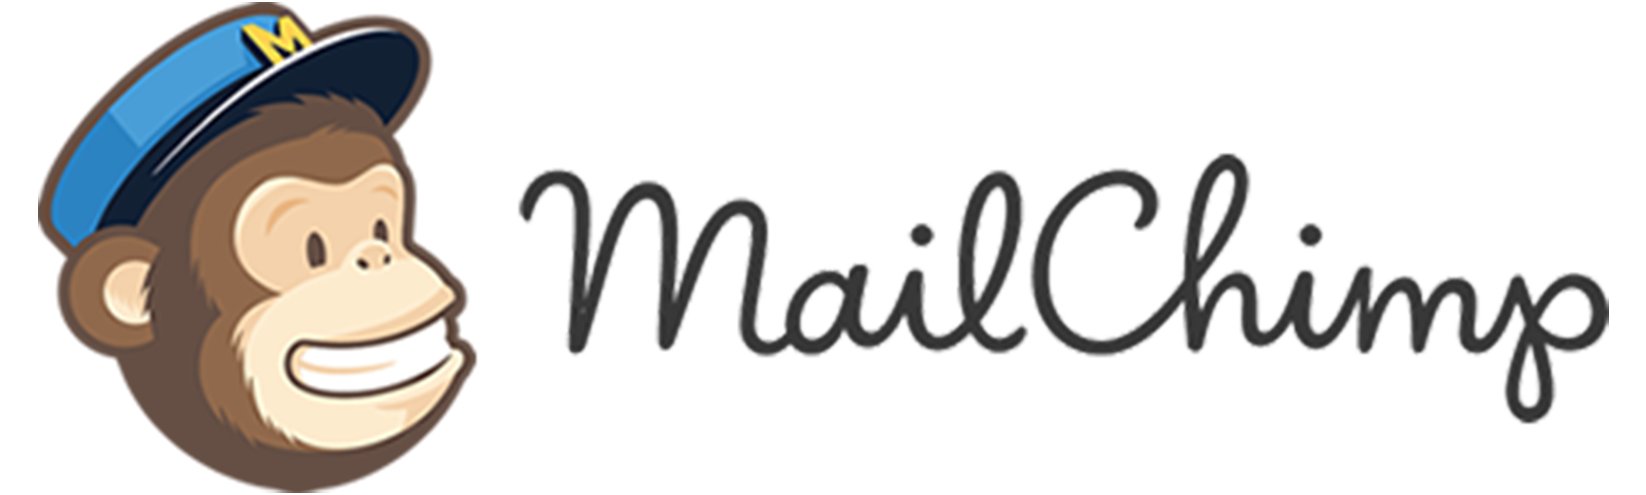 MailChimp.png